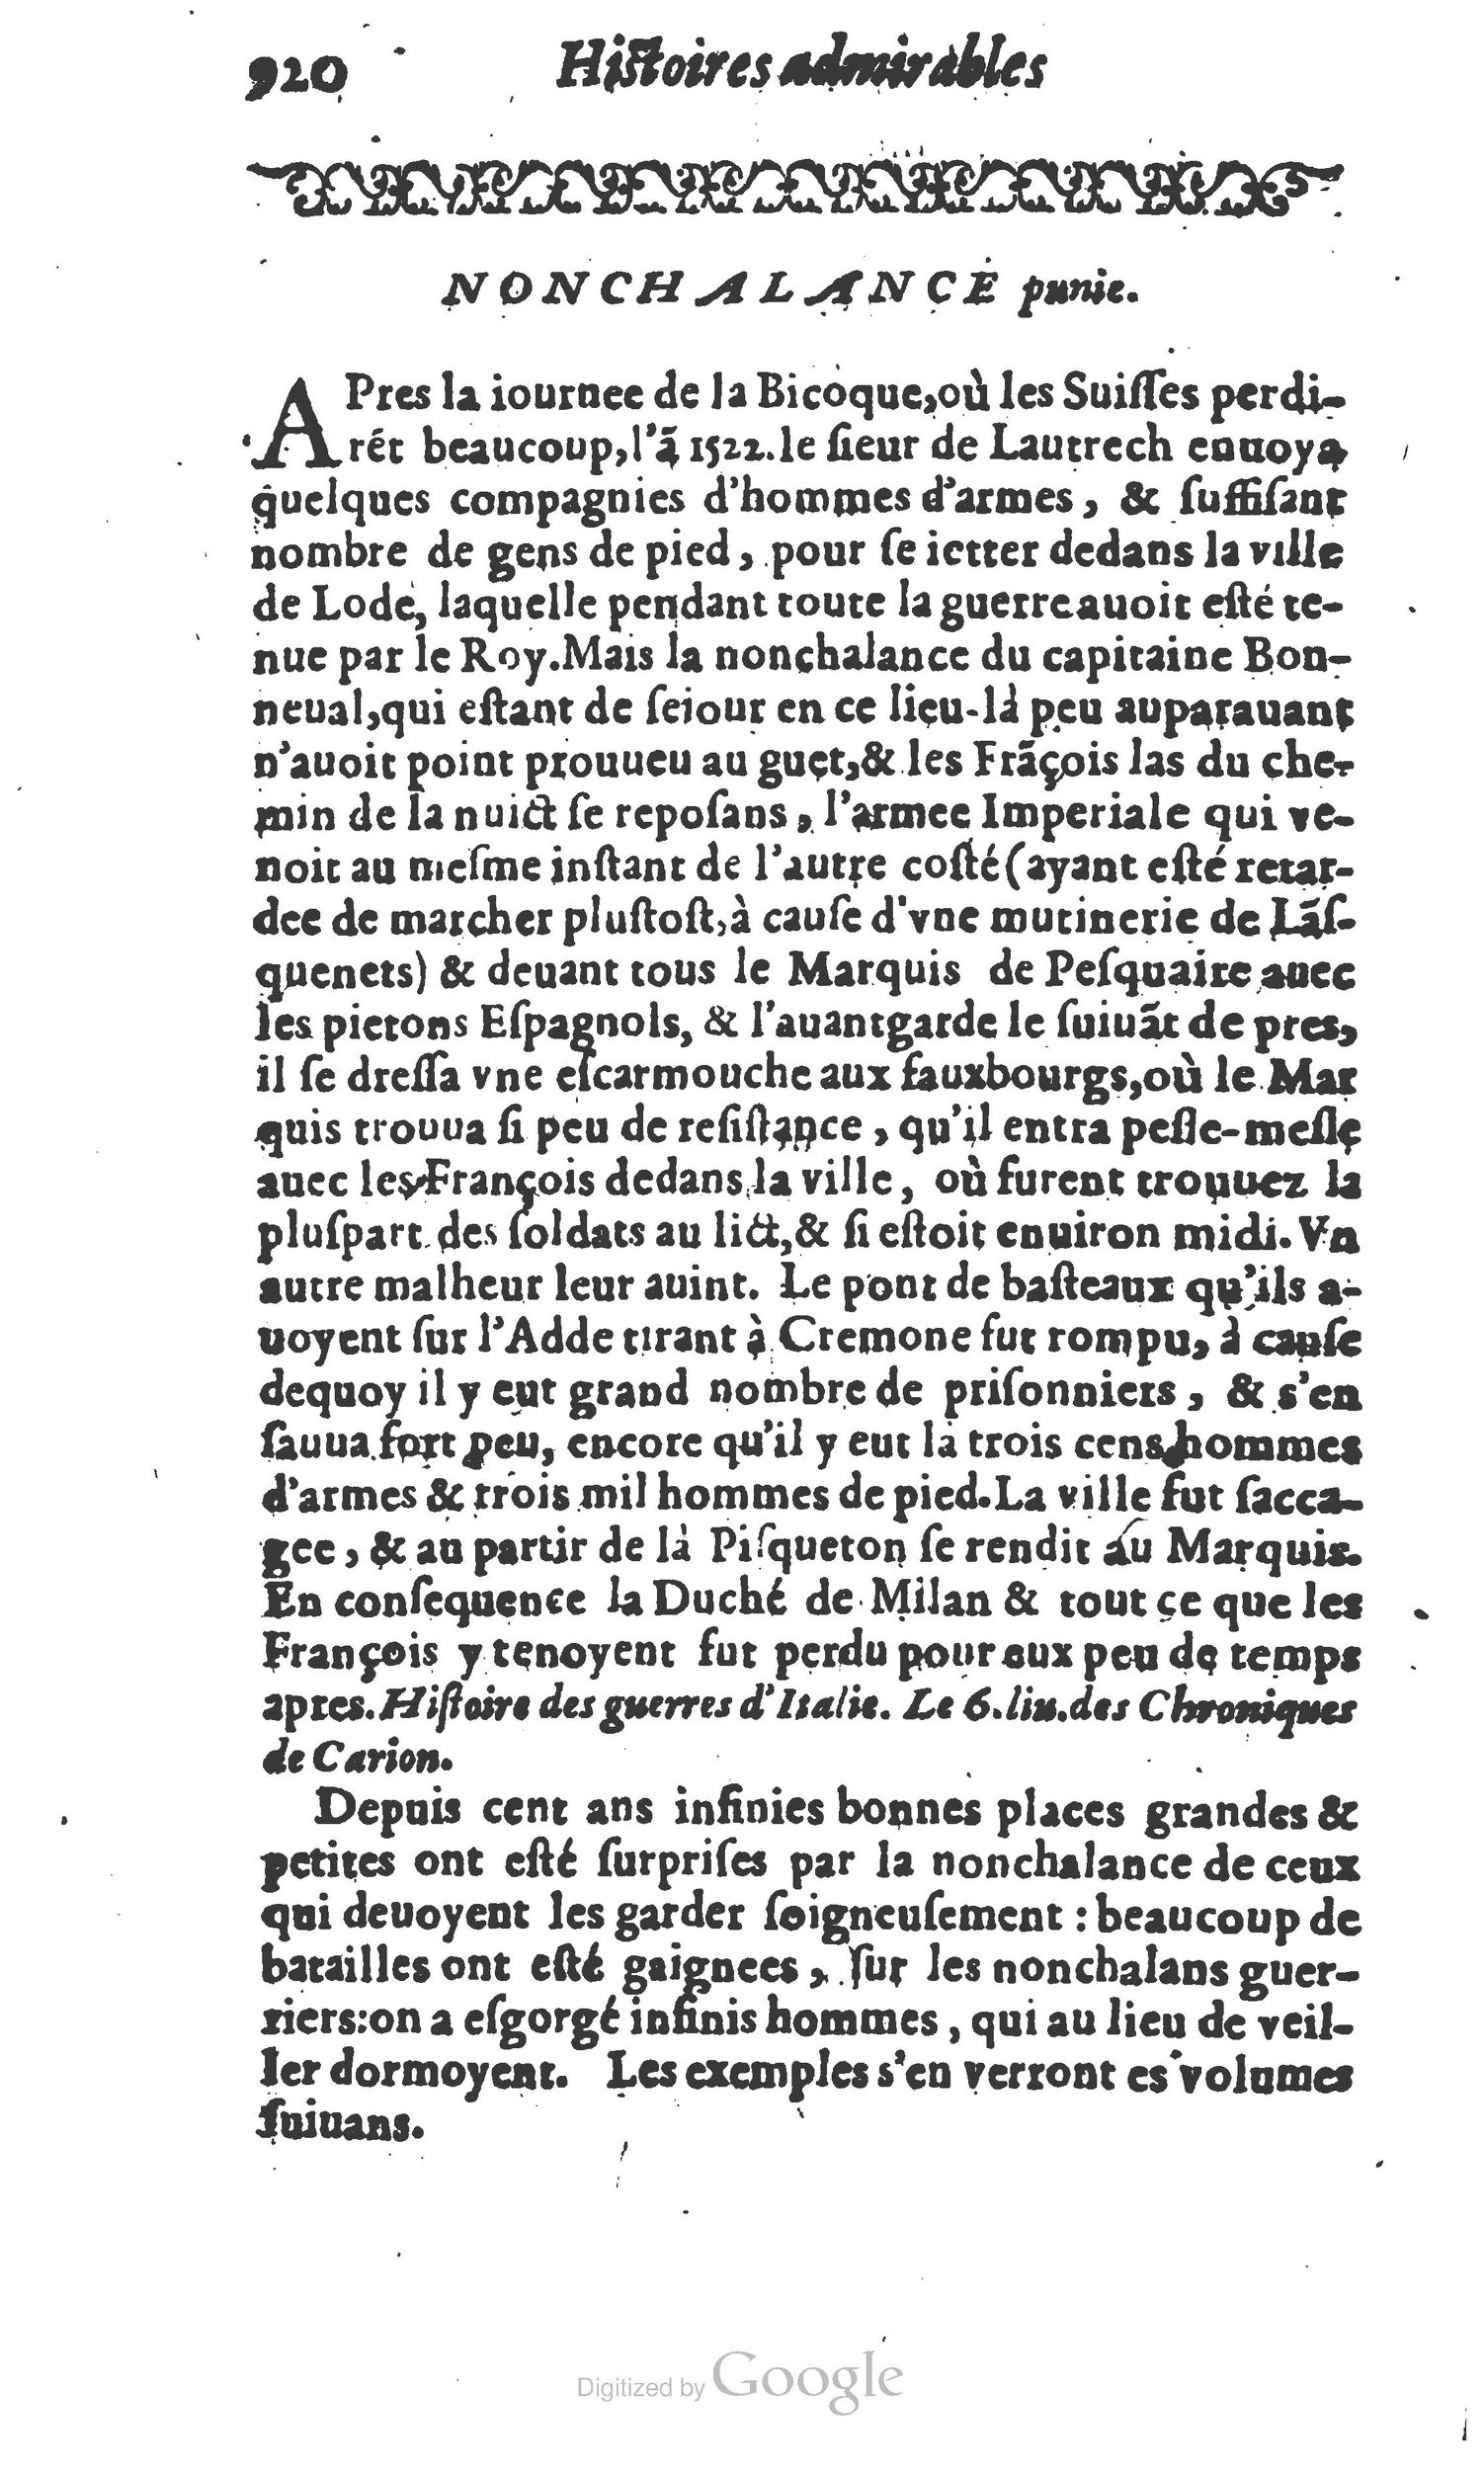 1610 Trésor d’histoires admirables et mémorables de nostre temps Marceau Princeton_Page_0941.jpg